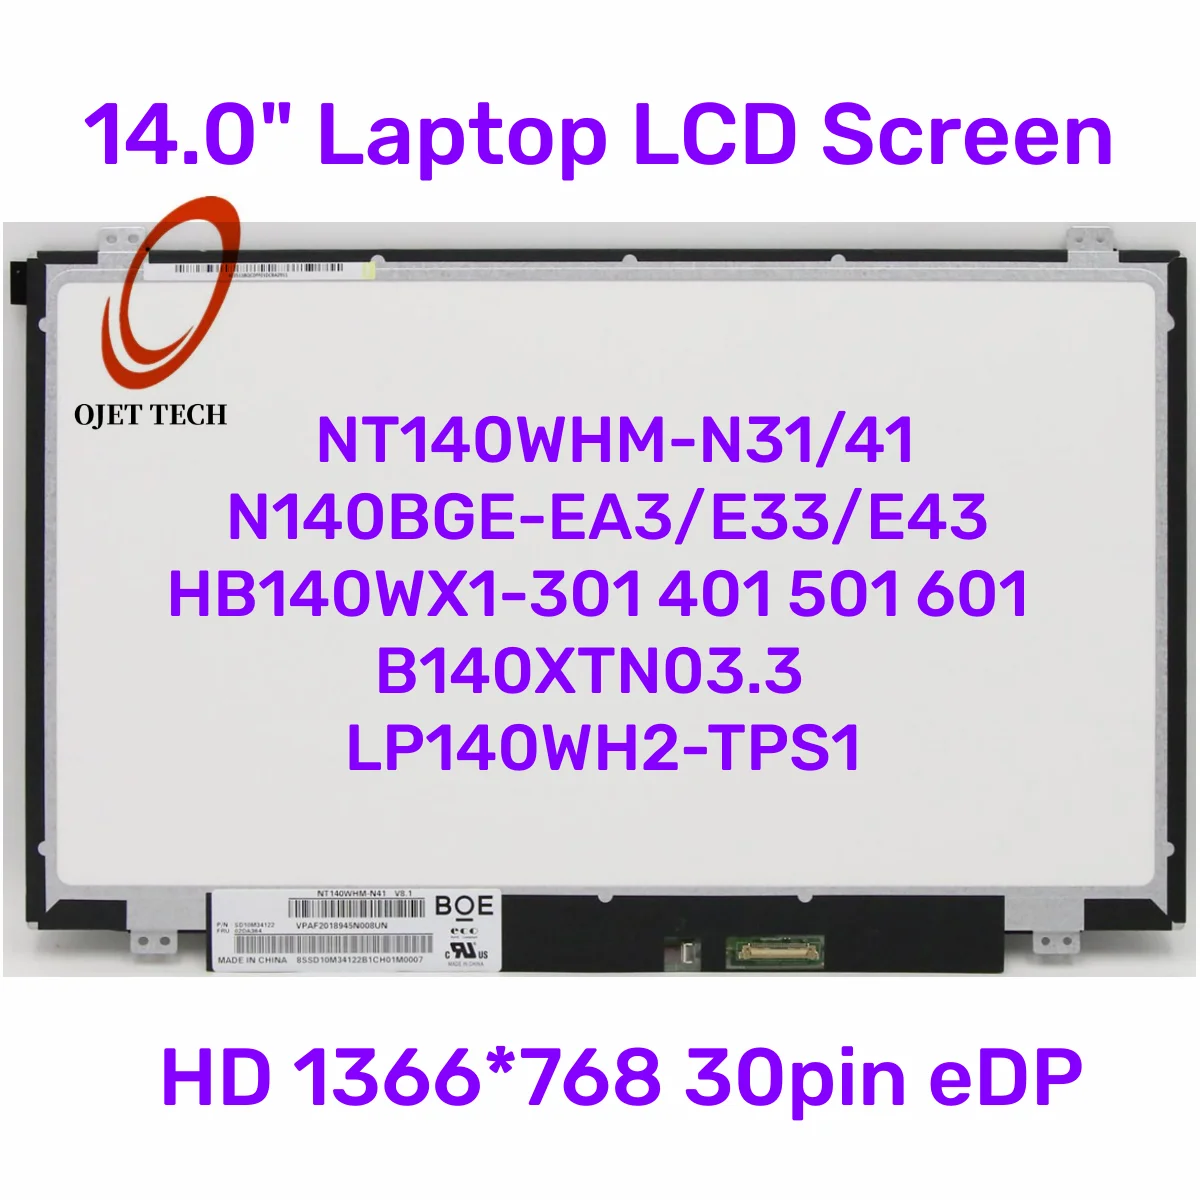 

14.0" Laptop LCD Screen NT140WHM-N31/41 N140BGE-EA3/E33/E43 HB140WX1-301 401 501 601 B140XTN03.3 LP140WH2-TPS1 HD 30pin eDP